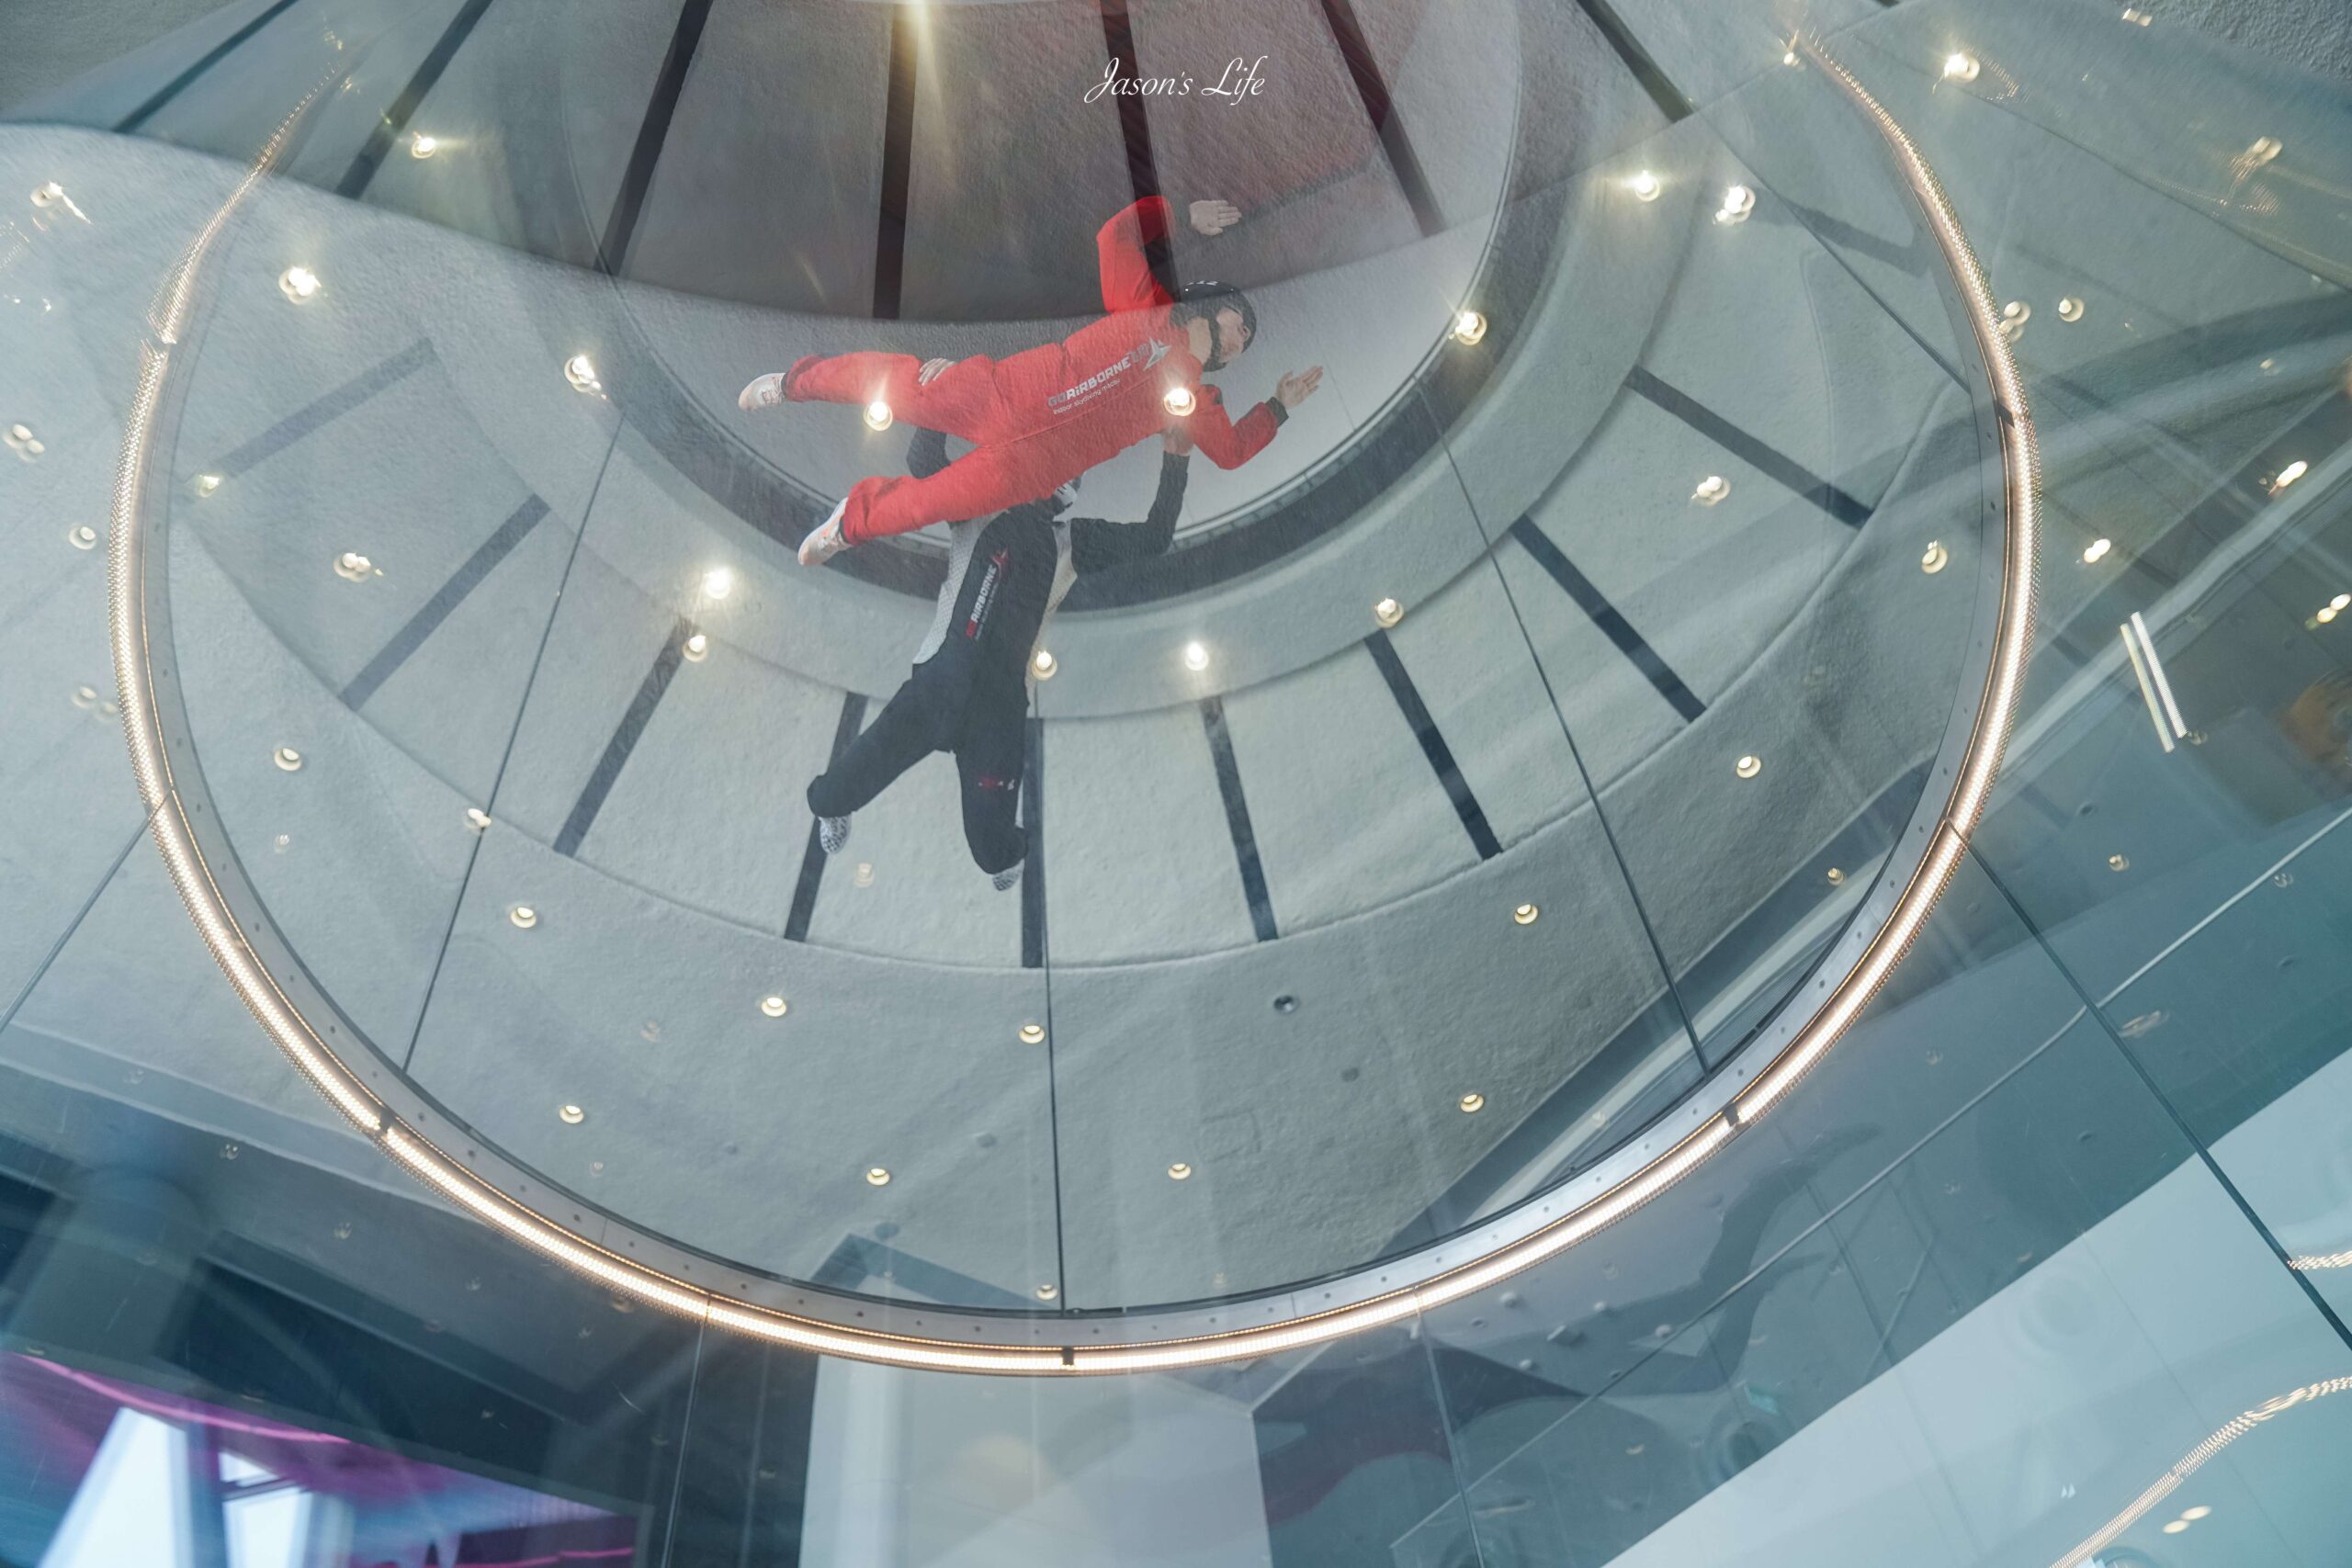 【澳門｜景點】GoAirborne 室内跳傘。葡京人飯店超人氣設施，體驗高空跳傘的刺激感，還可當個飛人 @Jason&#039;s Life